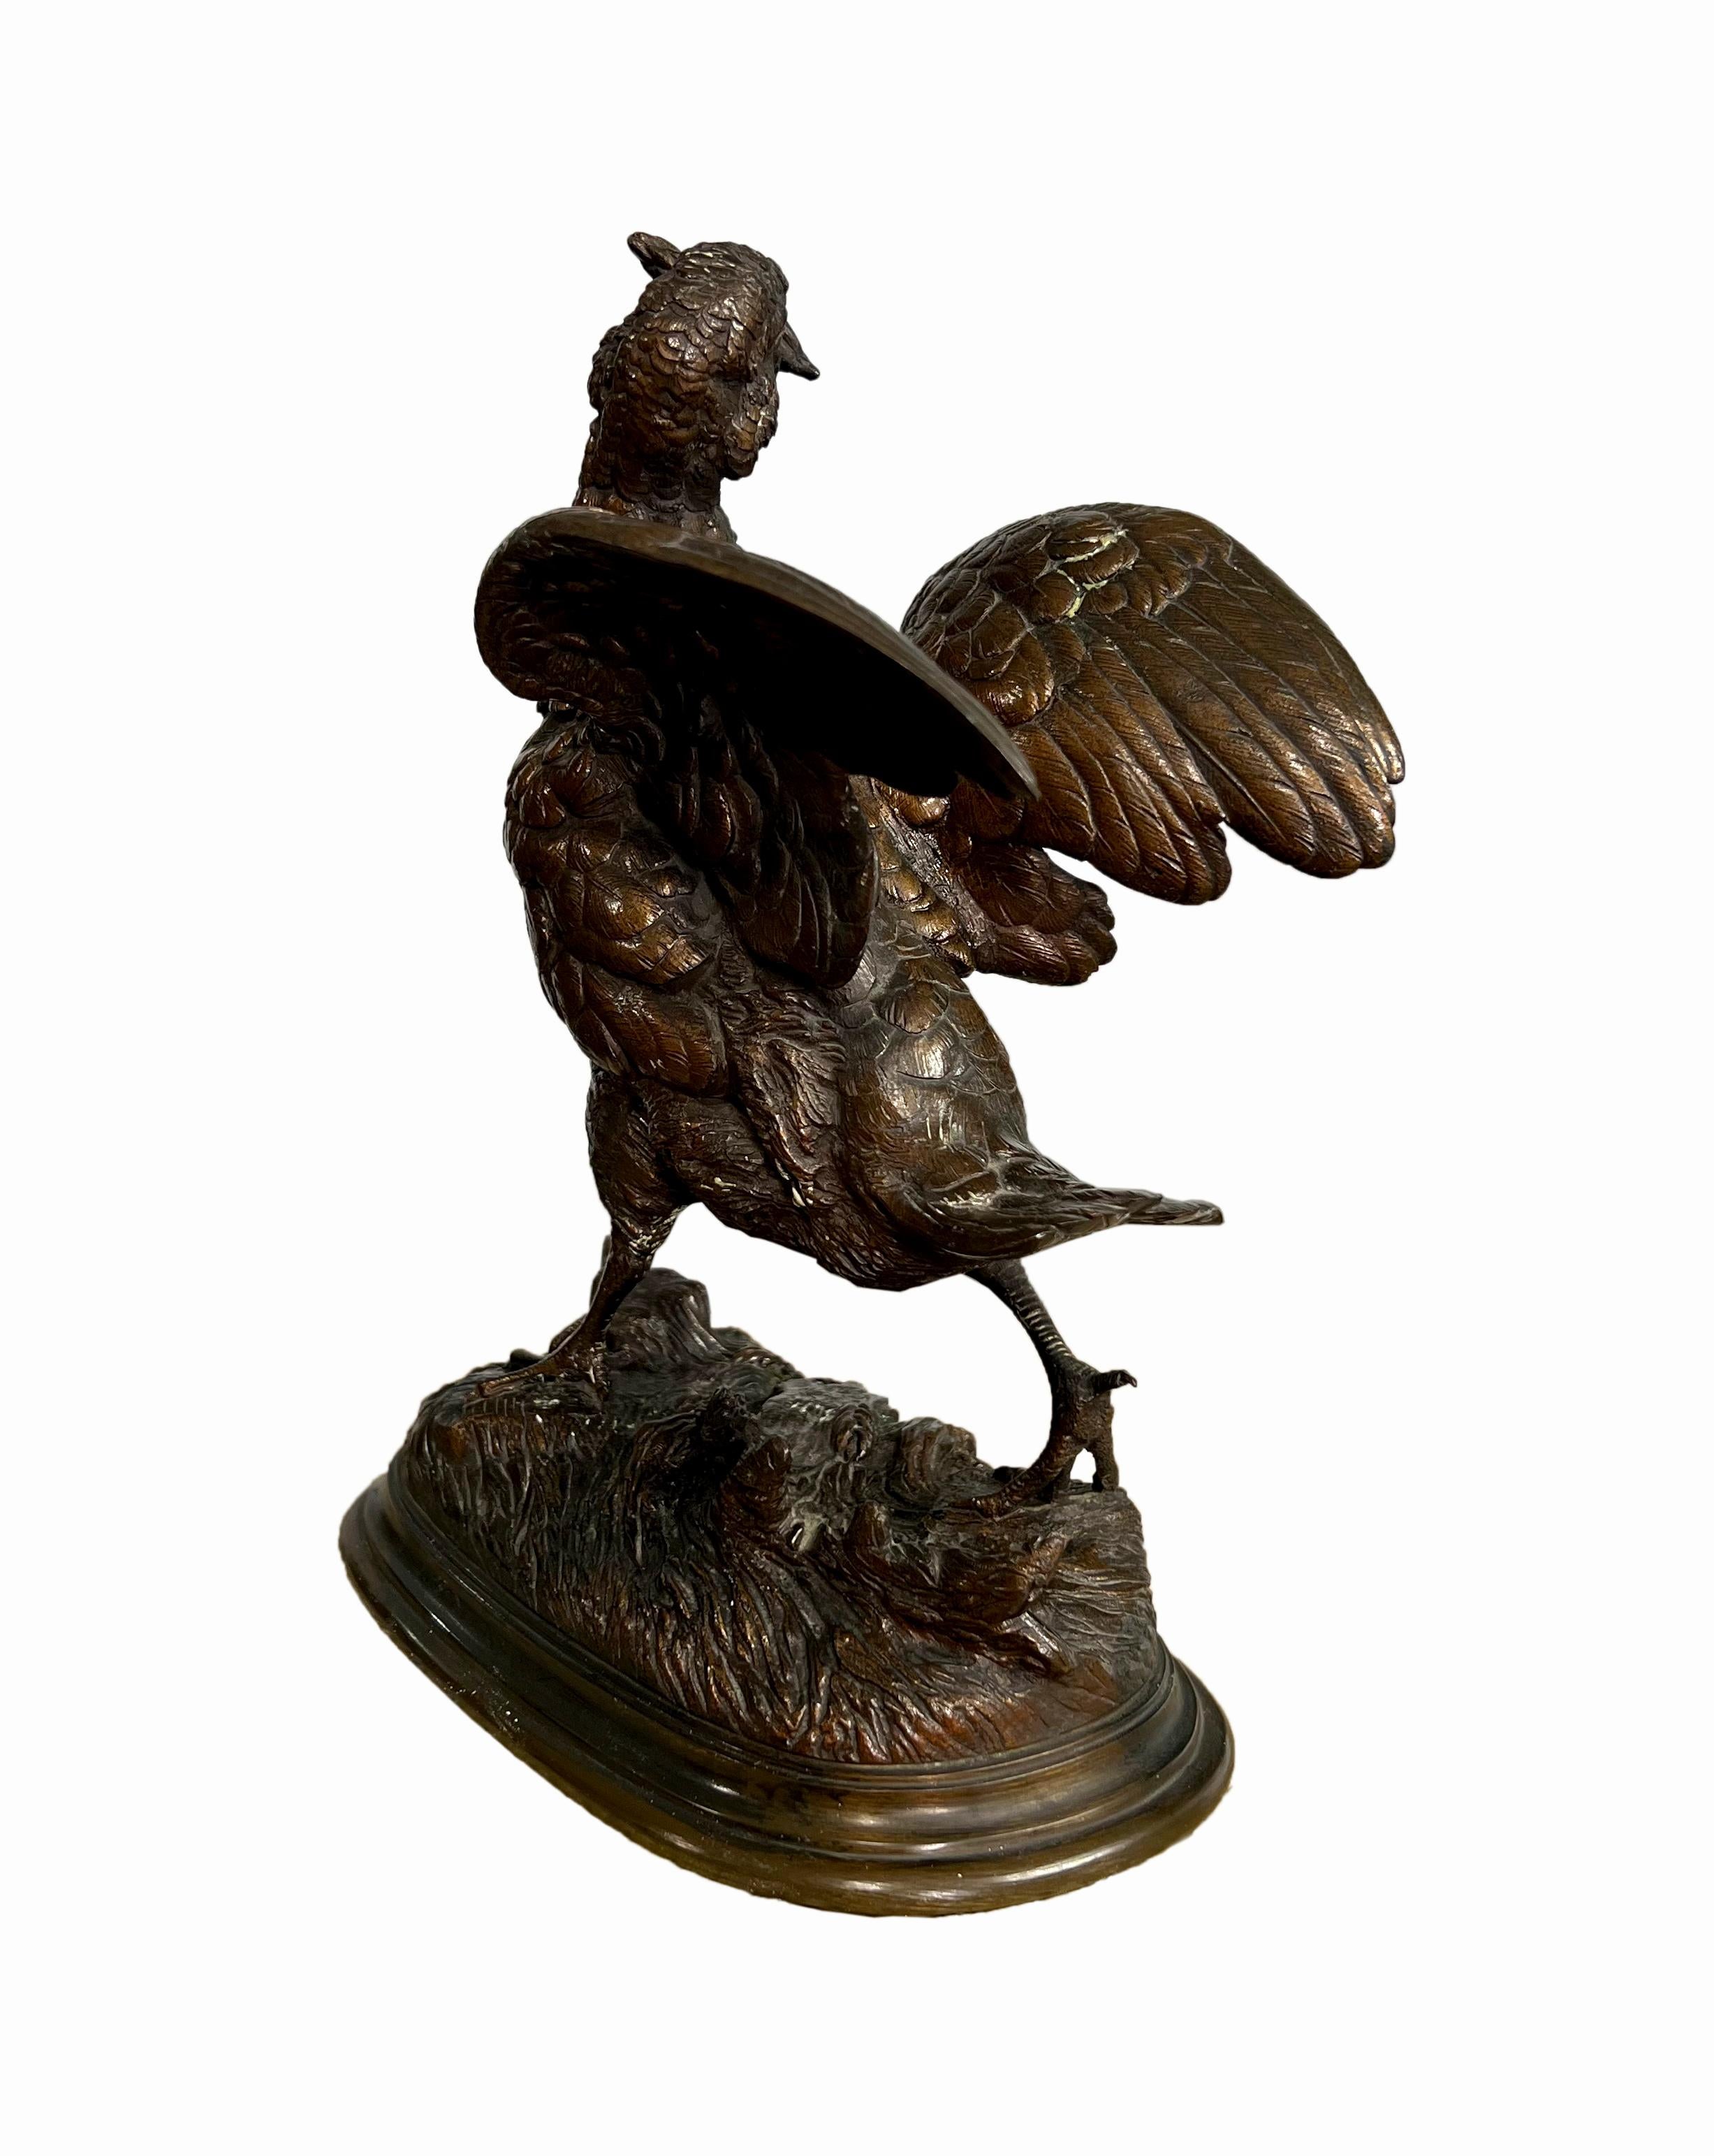 Sculpture française en bronze patiné représentant un tétras aux ailes déployées, portant une gerbe de blé dans son bec, sur une base ovale, d'après un modèle d'Alfred Barye (1839-1882).
Incisé : BARYE.

Hauteur